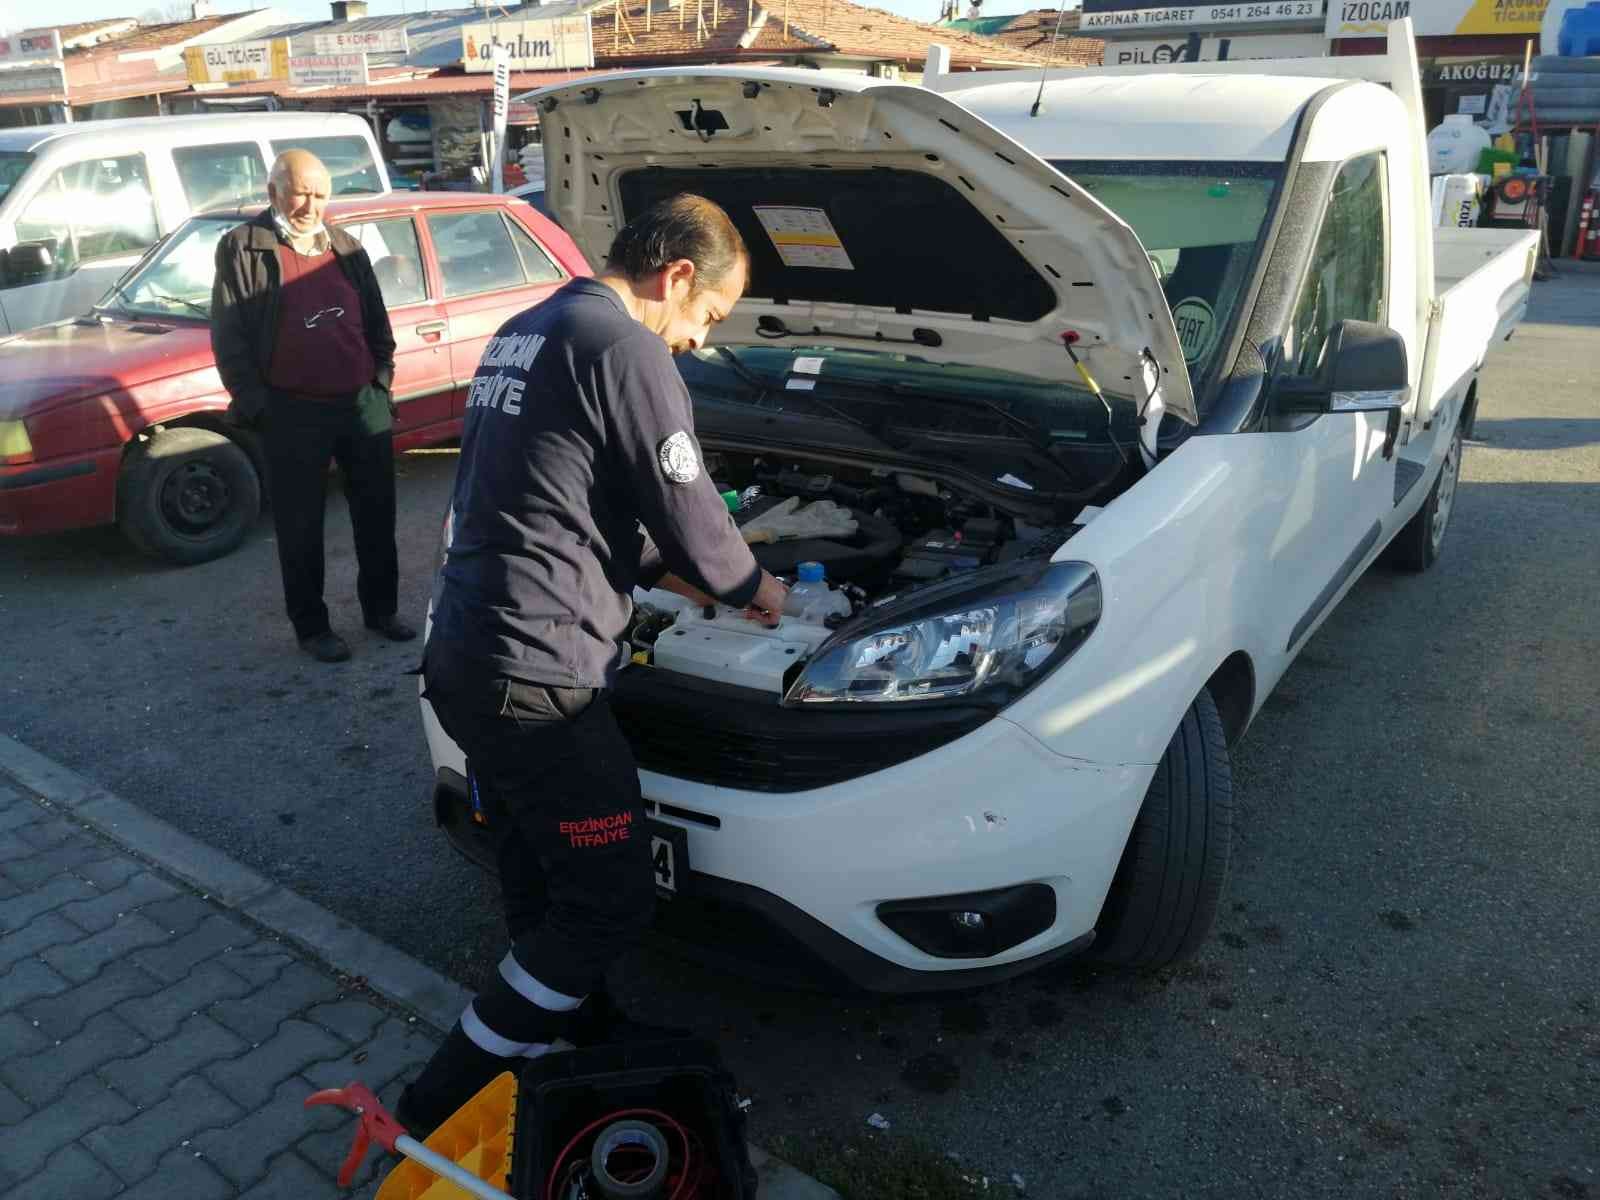 Arabanın motoruna sıkışan yavru kediyi itfaiye kurtardı #erzincan